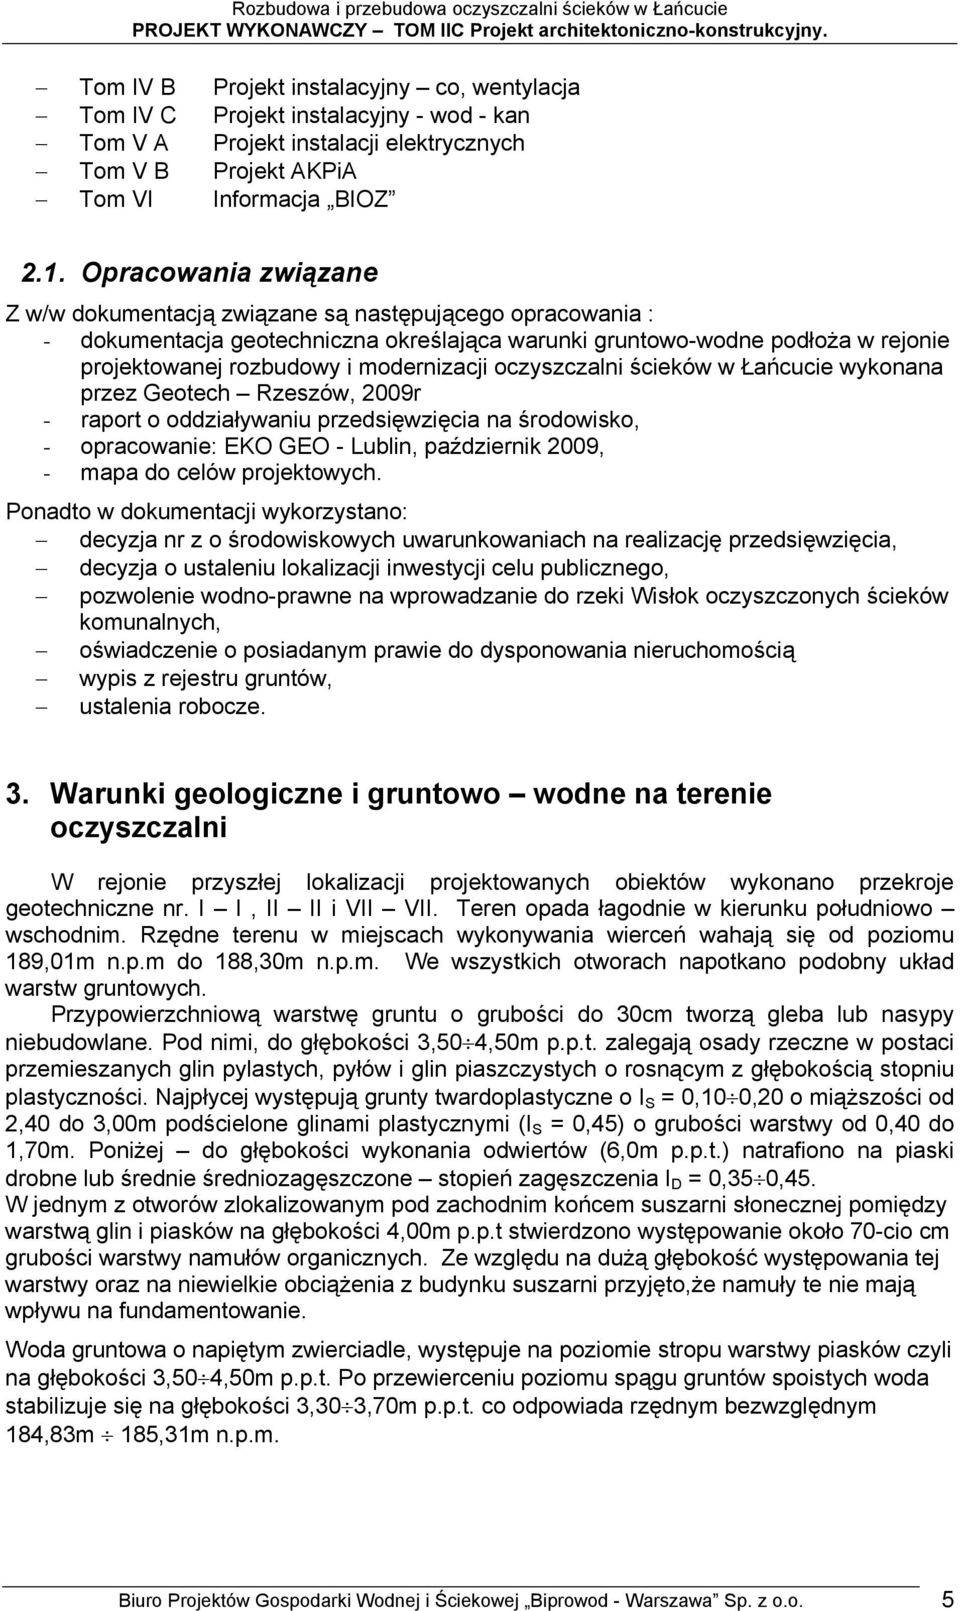 modernizacji oczyszczalni ścieków w Łańcucie wykonana przez Geotech Rzeszów, 2009r - raport o oddziaływaniu przedsięwzięcia na środowisko, - opracowanie: EKO GEO - Lublin, październik 2009, - mapa do